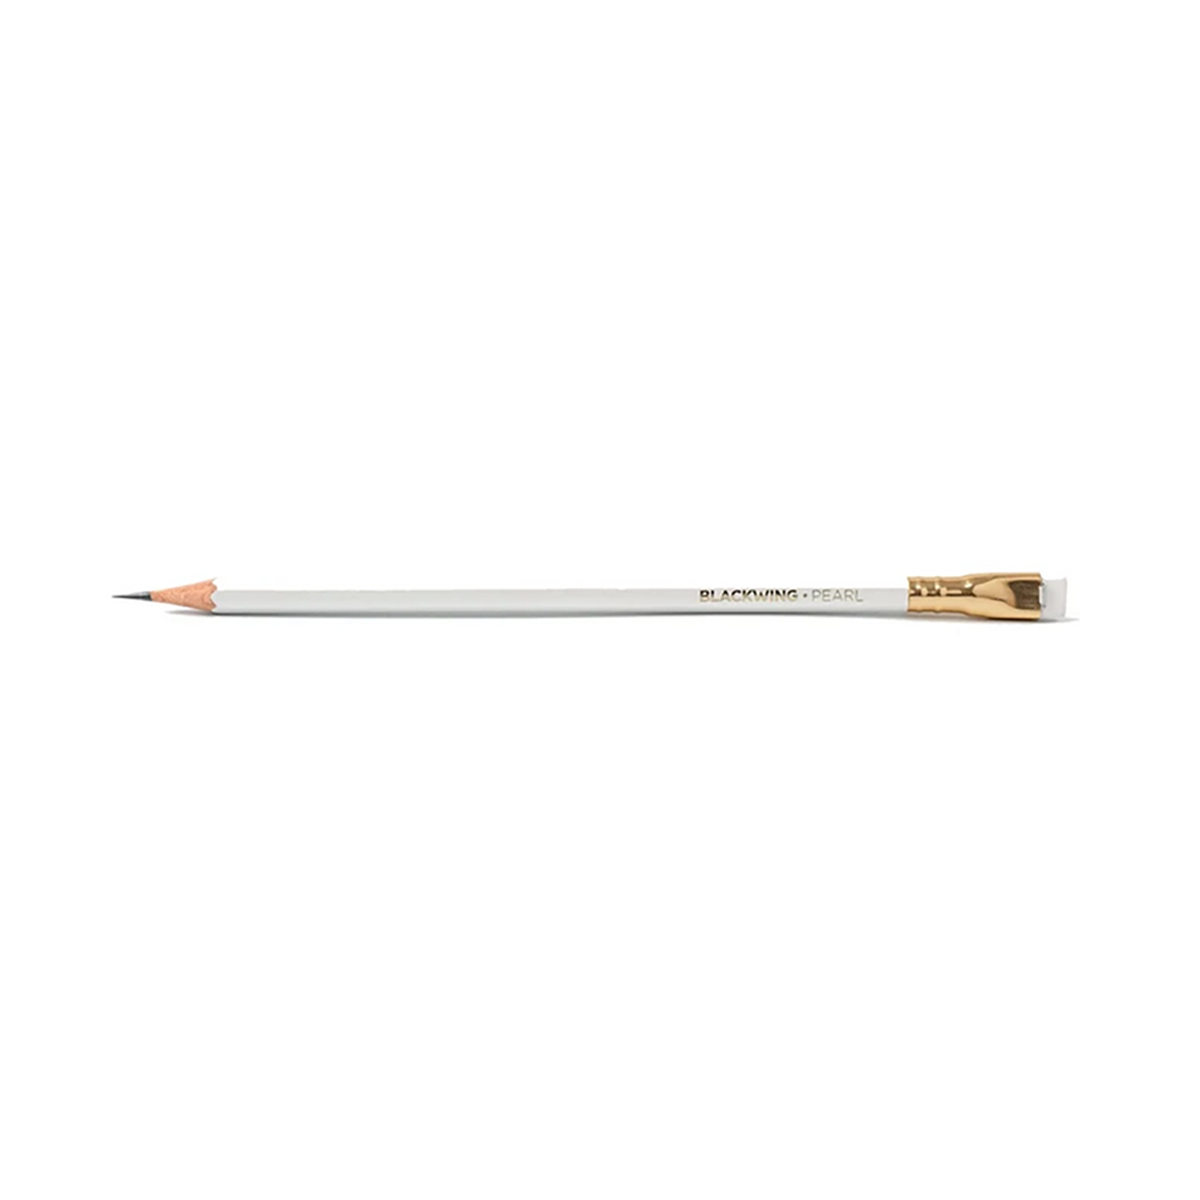 Blackwing Pearl scatola da 12 matite